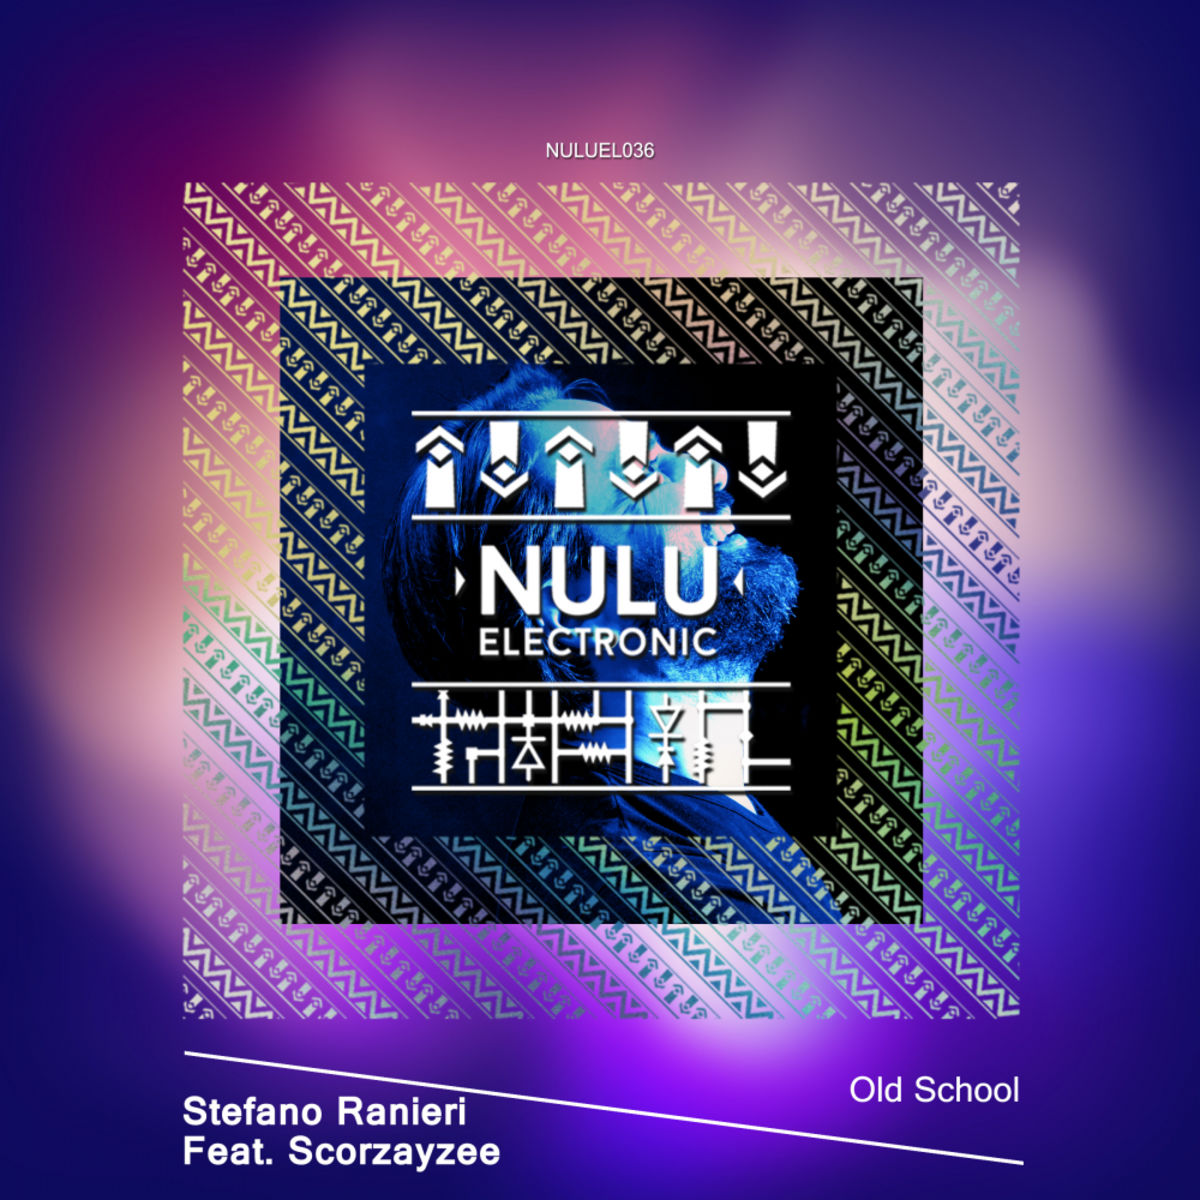 Stefano Ranieri ft Scorzayzee - Old School / NULU